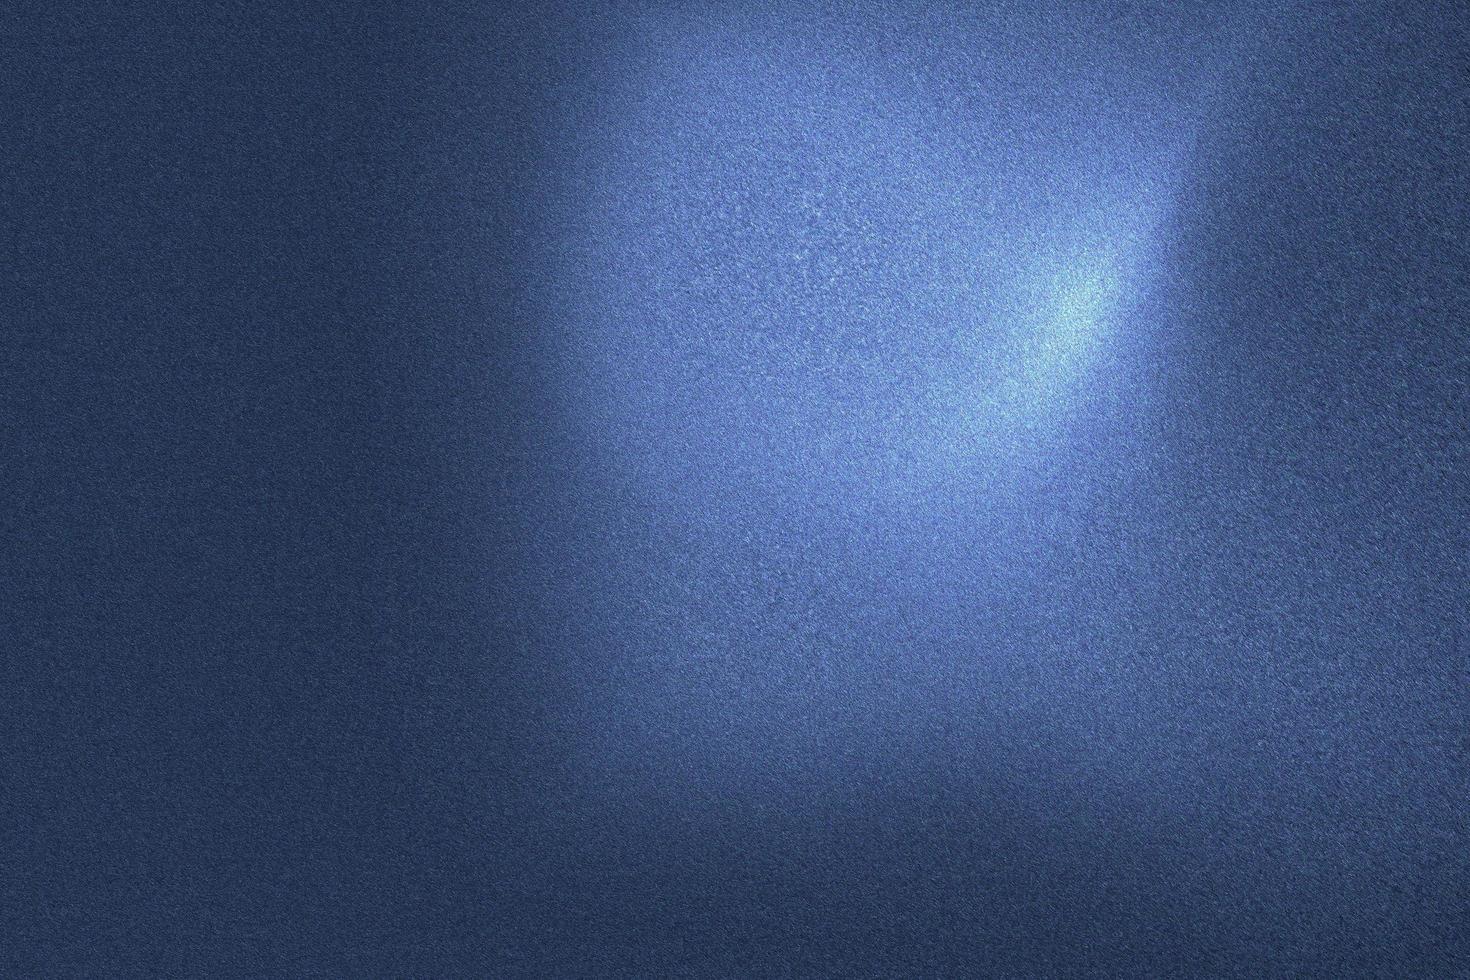 luce che brilla sulla parete metallica dell'onda blu nella stanza buia, fondo astratto della struttura foto